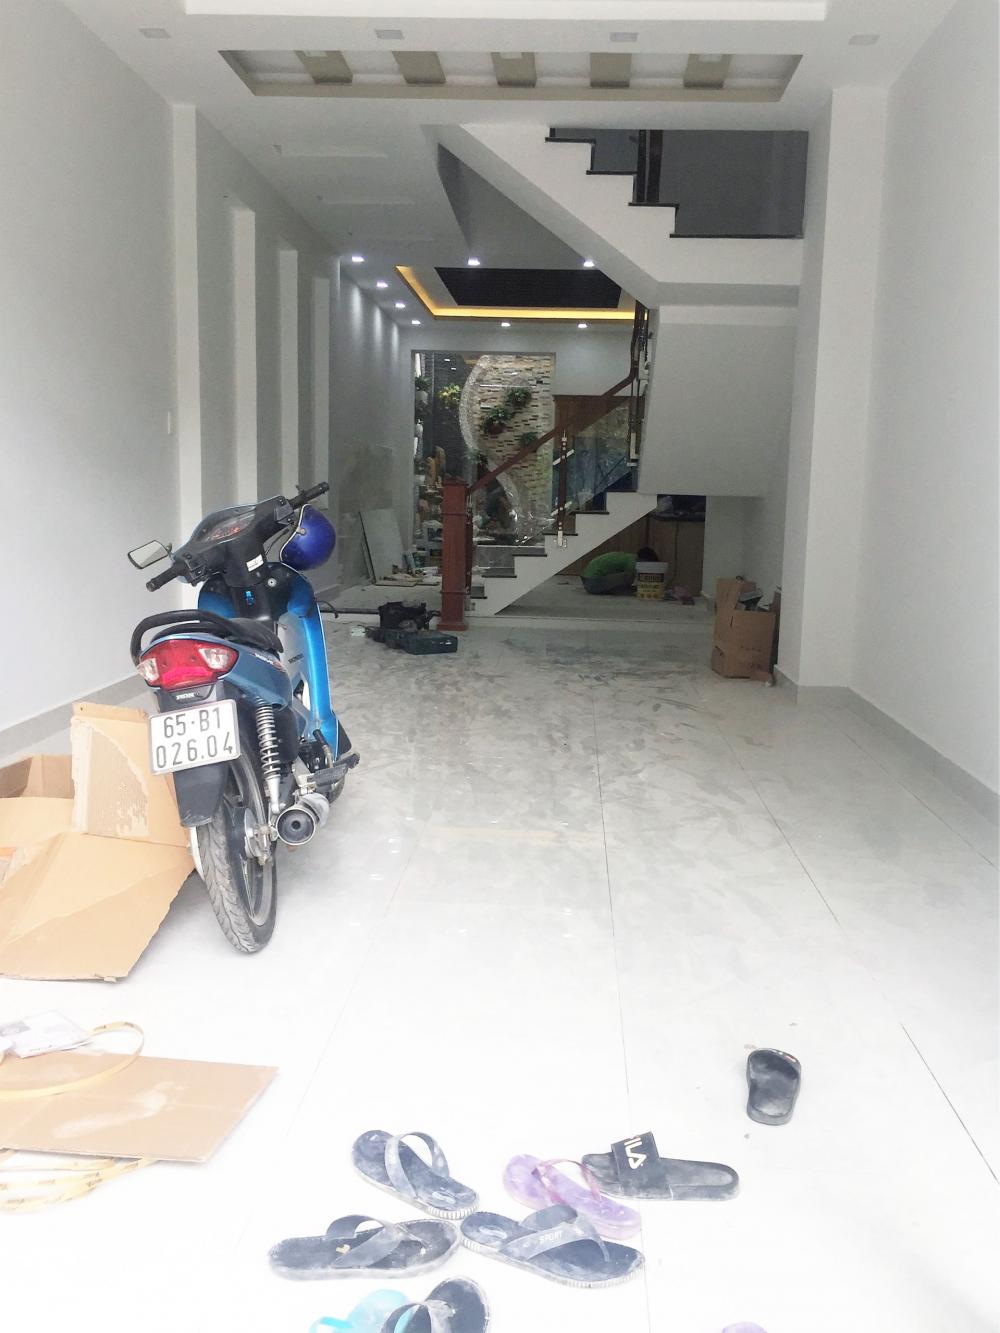 Bán nhà mới xây gần mặt tiền đường Phạm Hữu Lầu, Q7, DT 4x18m, 3 lầu, sân thượng. Giá 5,4 tỷ